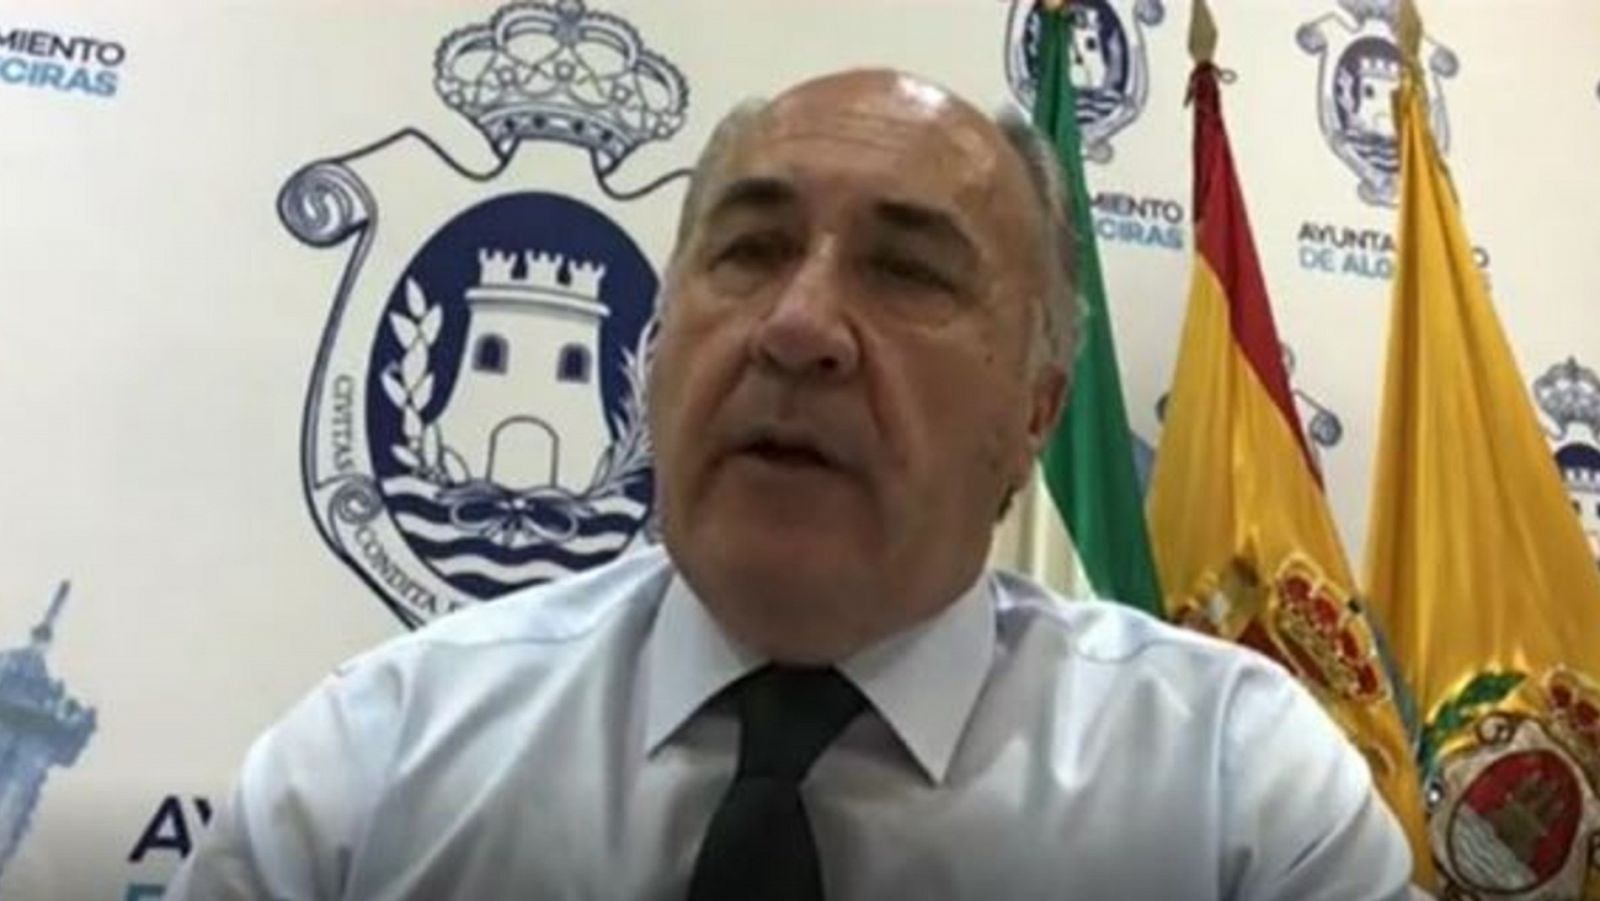 Coronavirus | El alcalde de Algeciras sobre el brote en un hostal: "Se está investigando que no haya ningún contagio más"